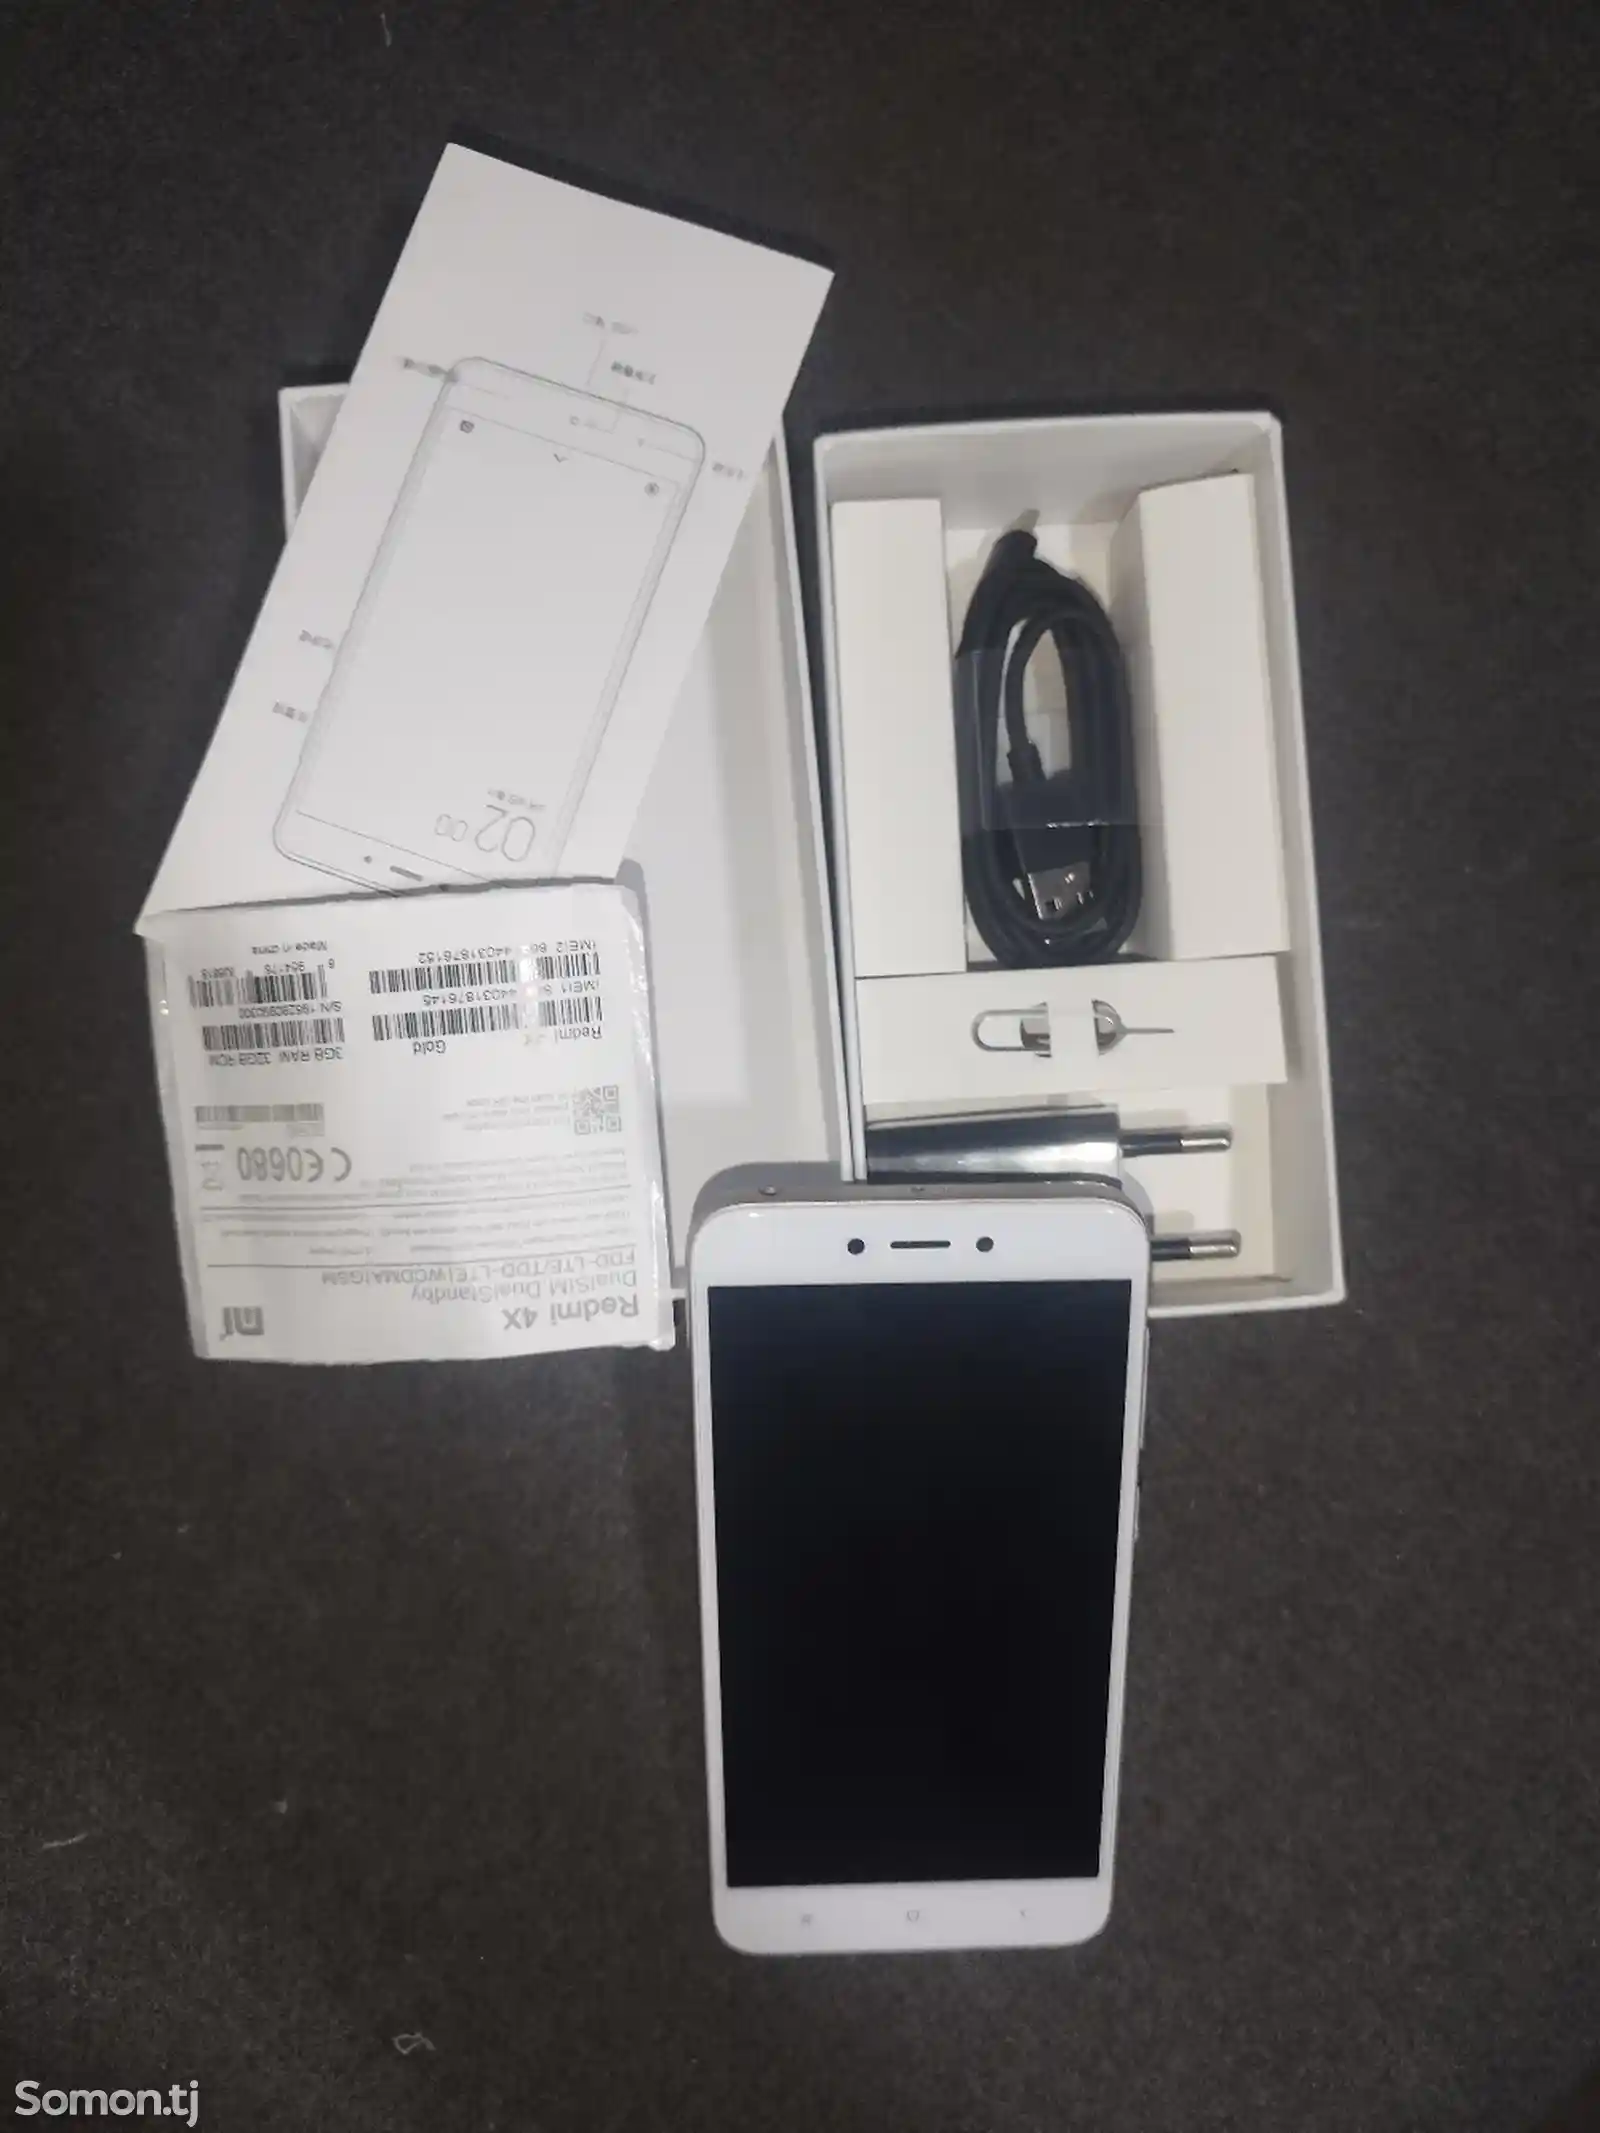 Xiaomi Redmi 4x-3